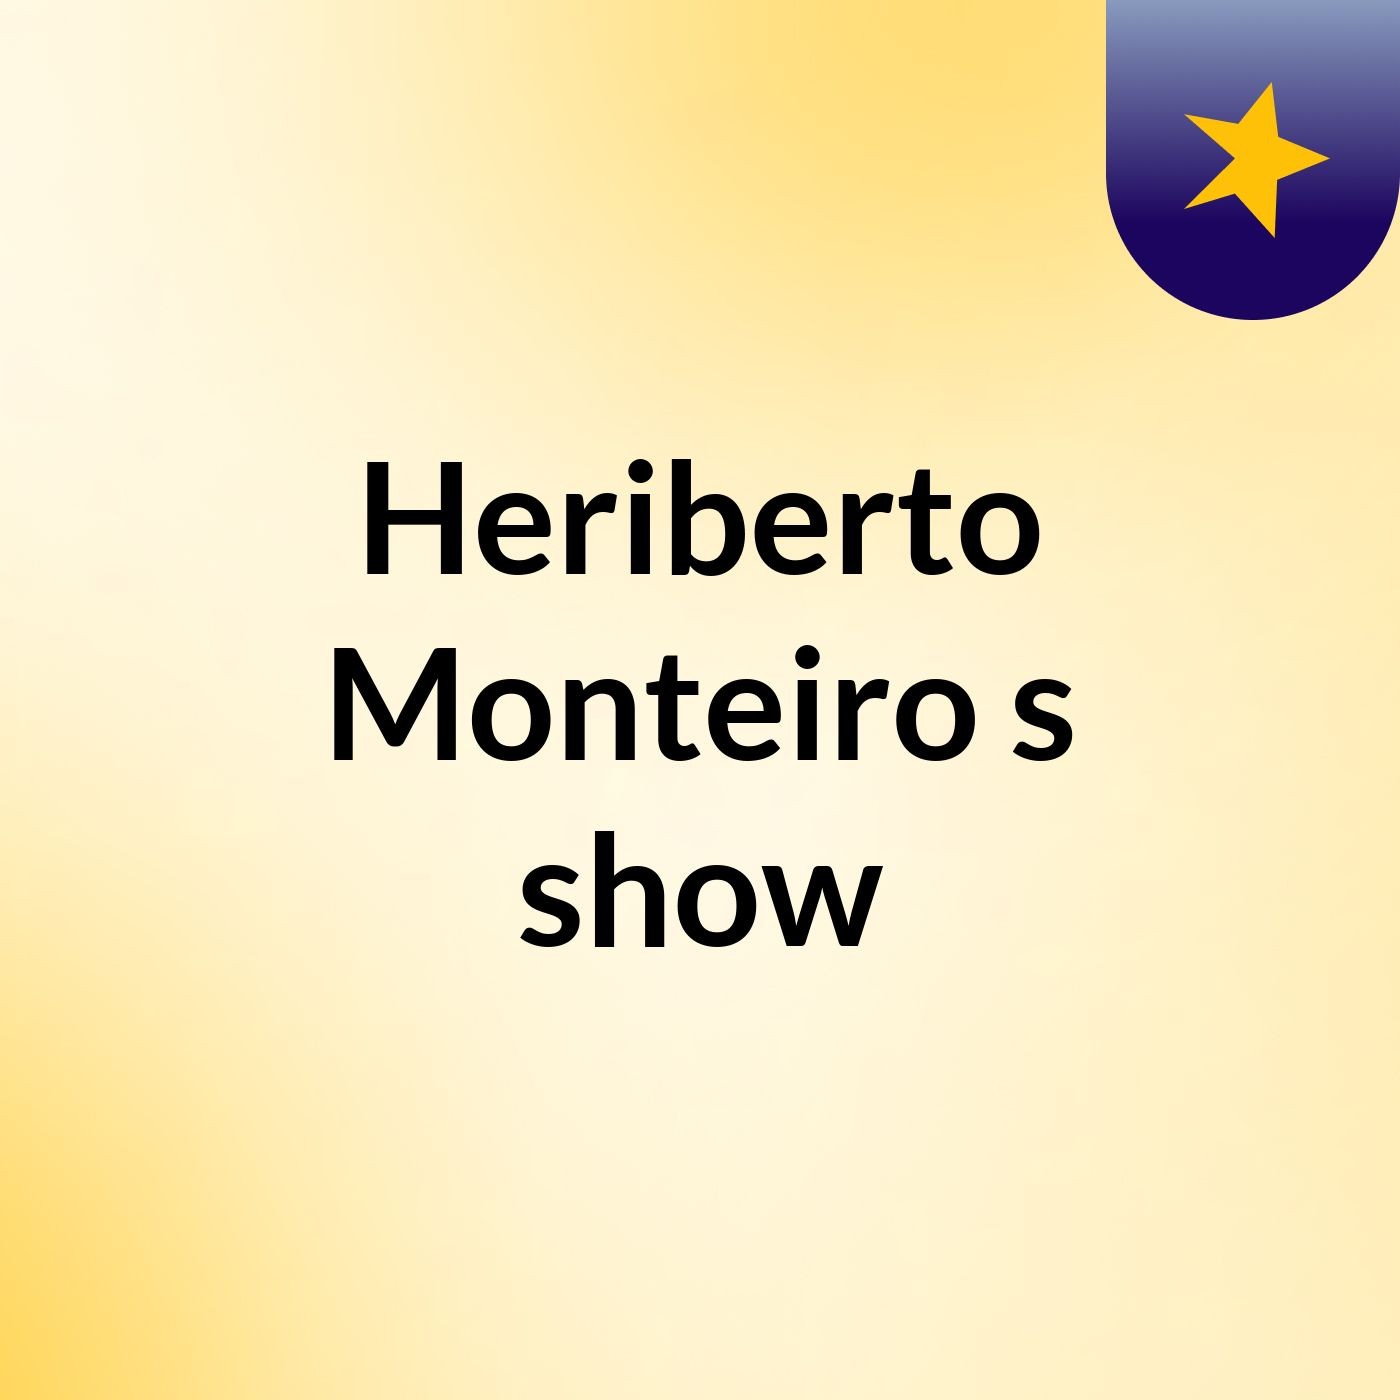 Heriberto Monteiro's show